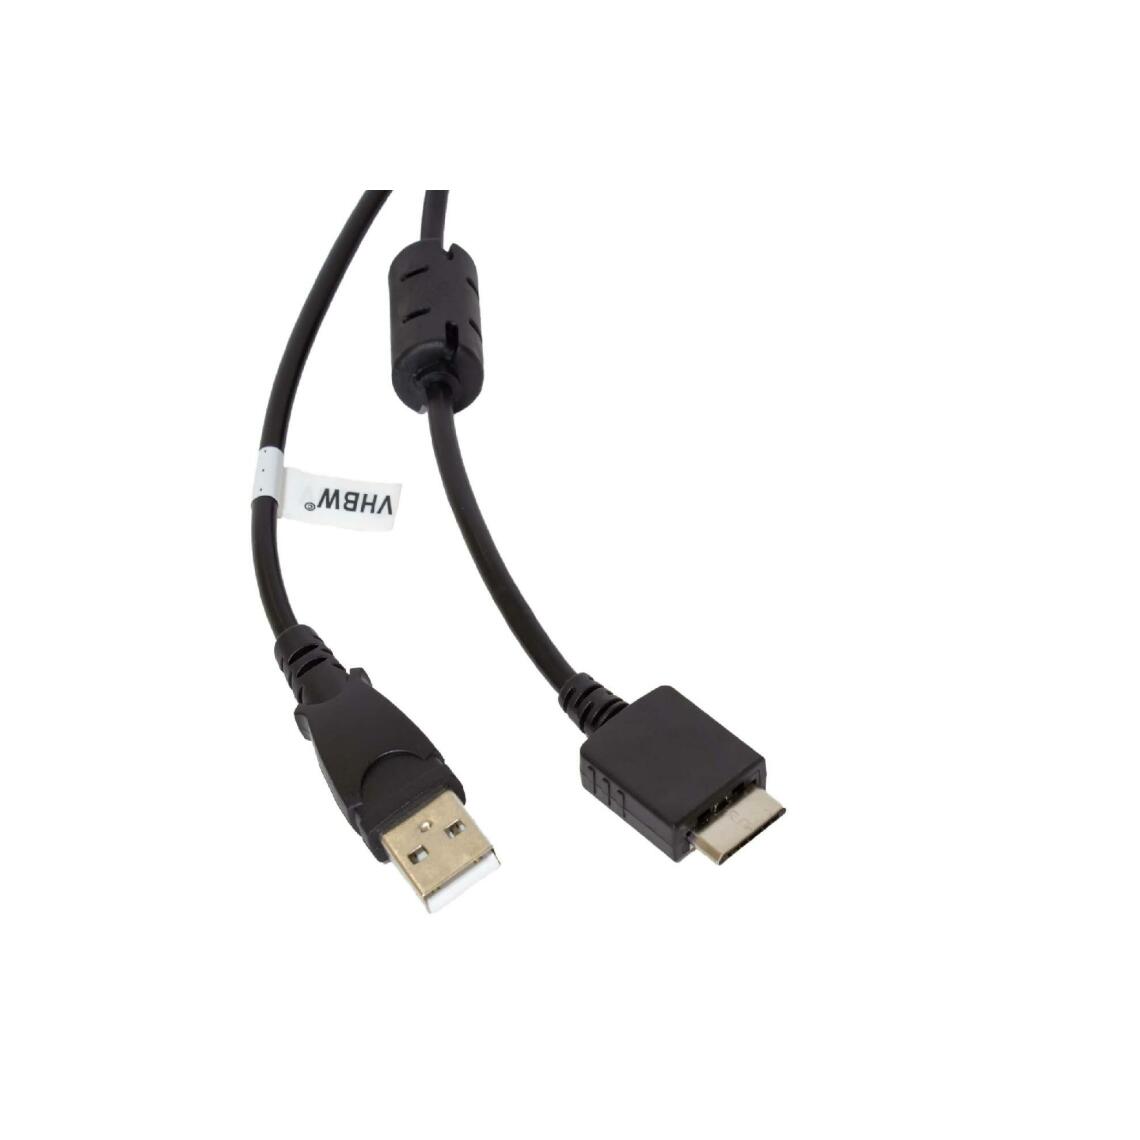 Vhbw - vhbw câble de données USB (type A sur lecteur MP3) câble de chargement compatible avec Sony Walkman NW-A919, NW-S603 lecteur MP3 - noir, 150cm - Alimentation modulaire